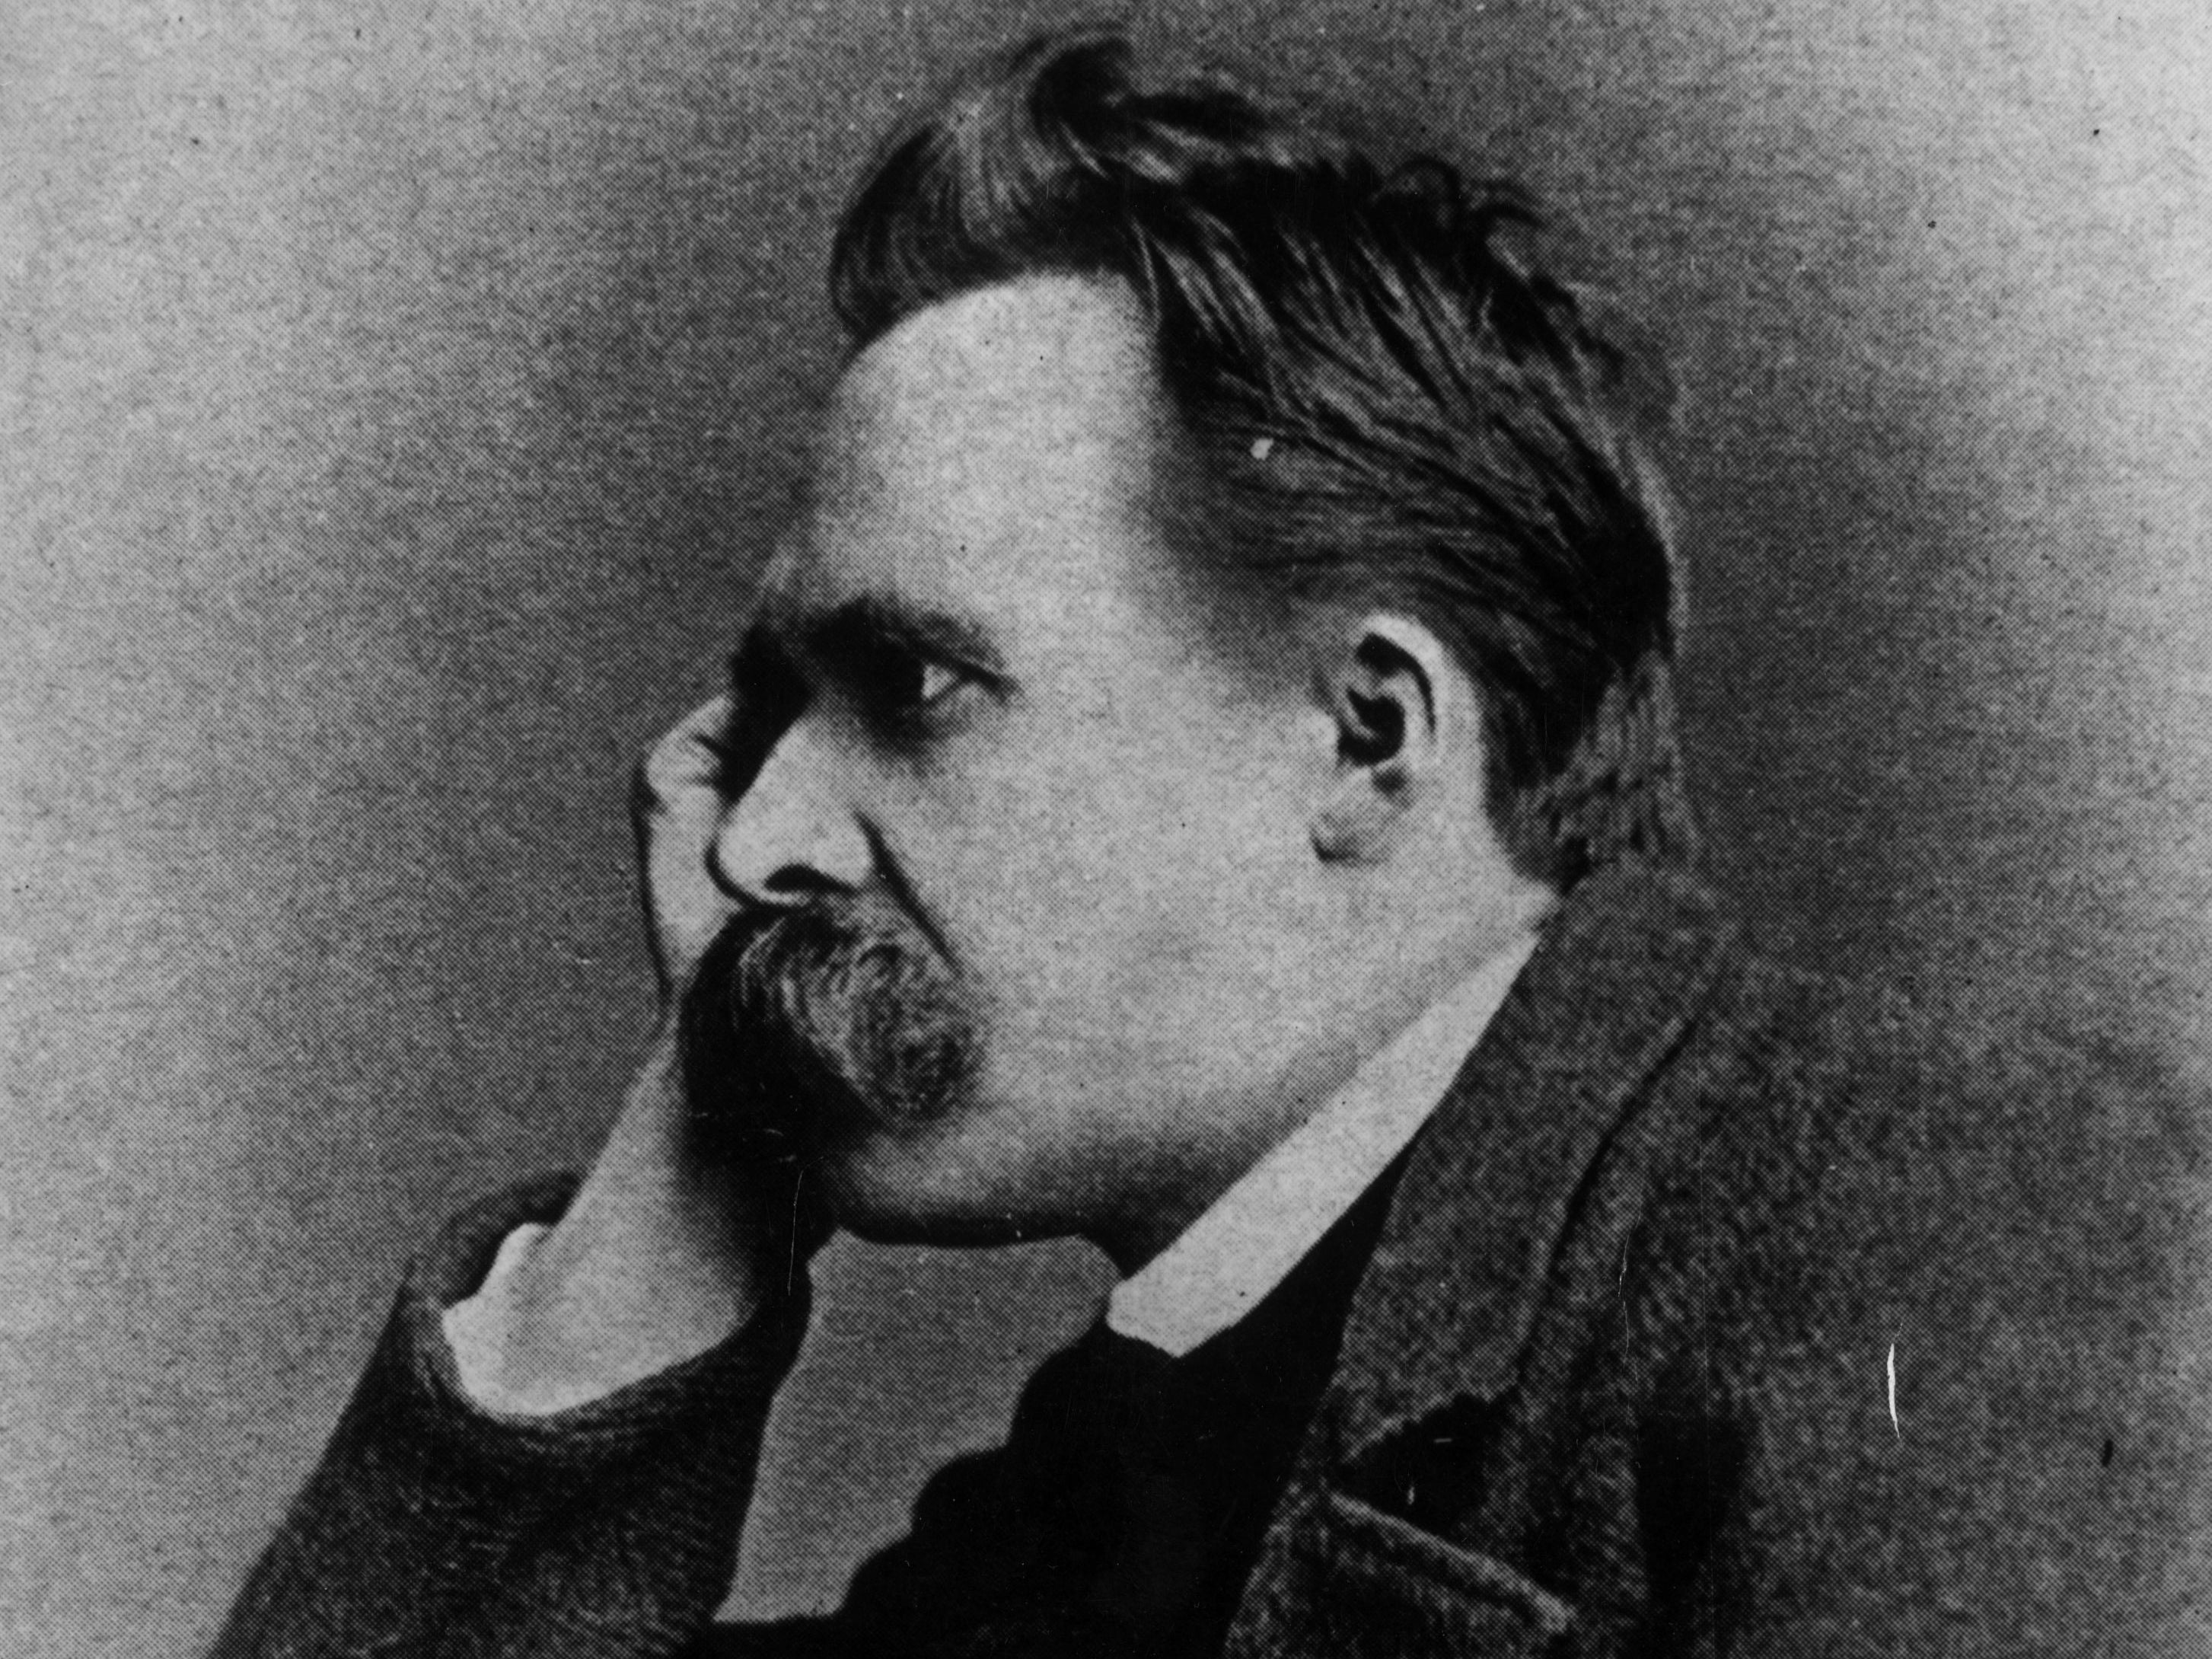 German philosopher Friedrich Nietzsche pictured circa 1885